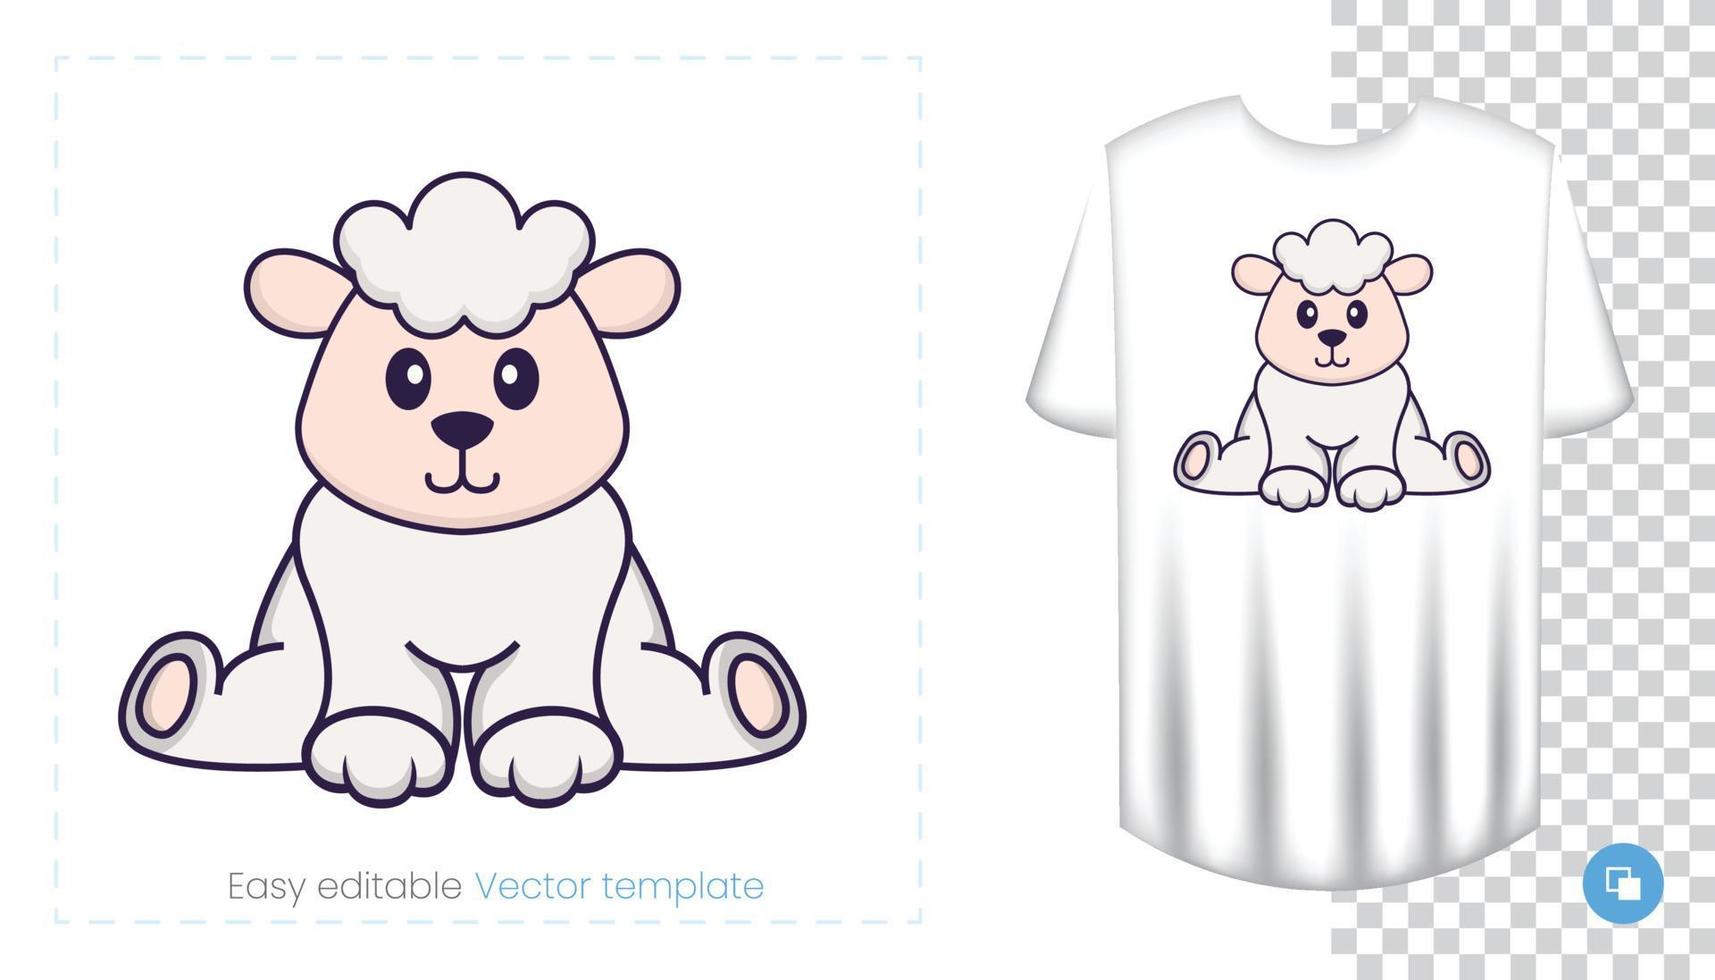 simpatico personaggio di pecora. stampe su t-shirt, felpe, custodie per cellulari, souvenir. illustrazione vettoriale isolato su sfondo bianco.